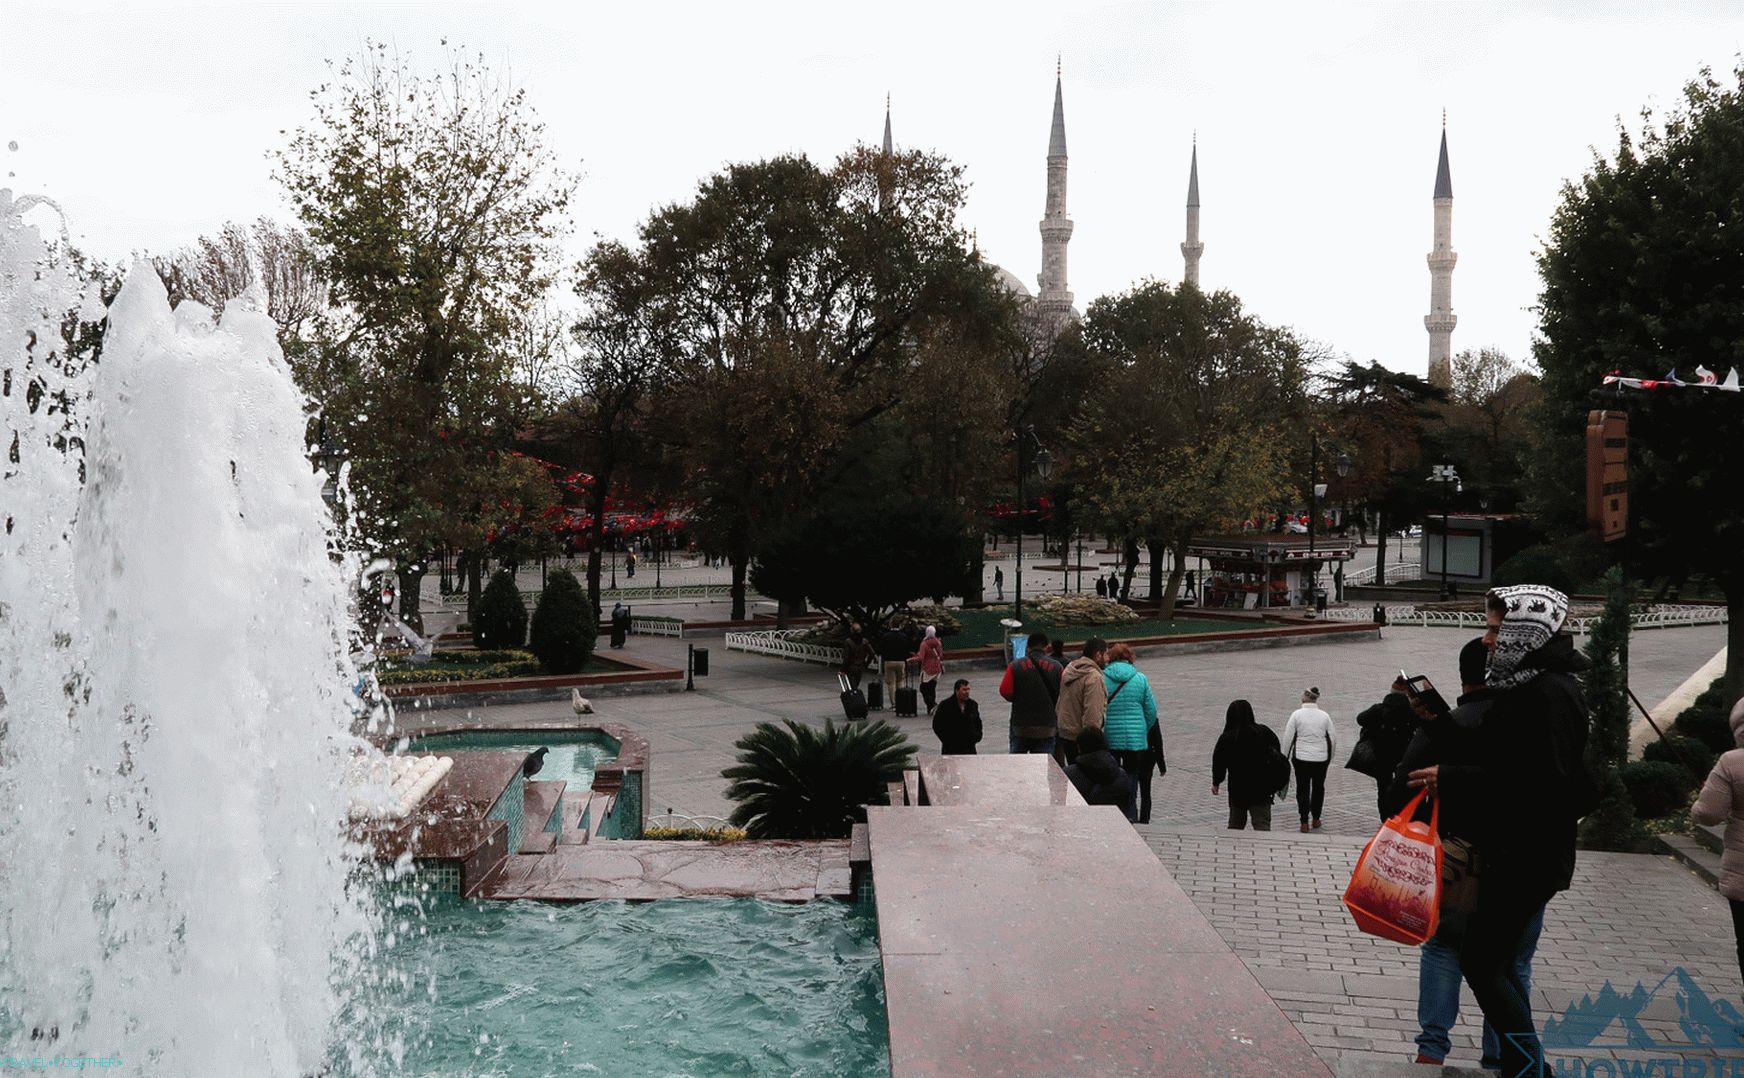 Istanbul in November